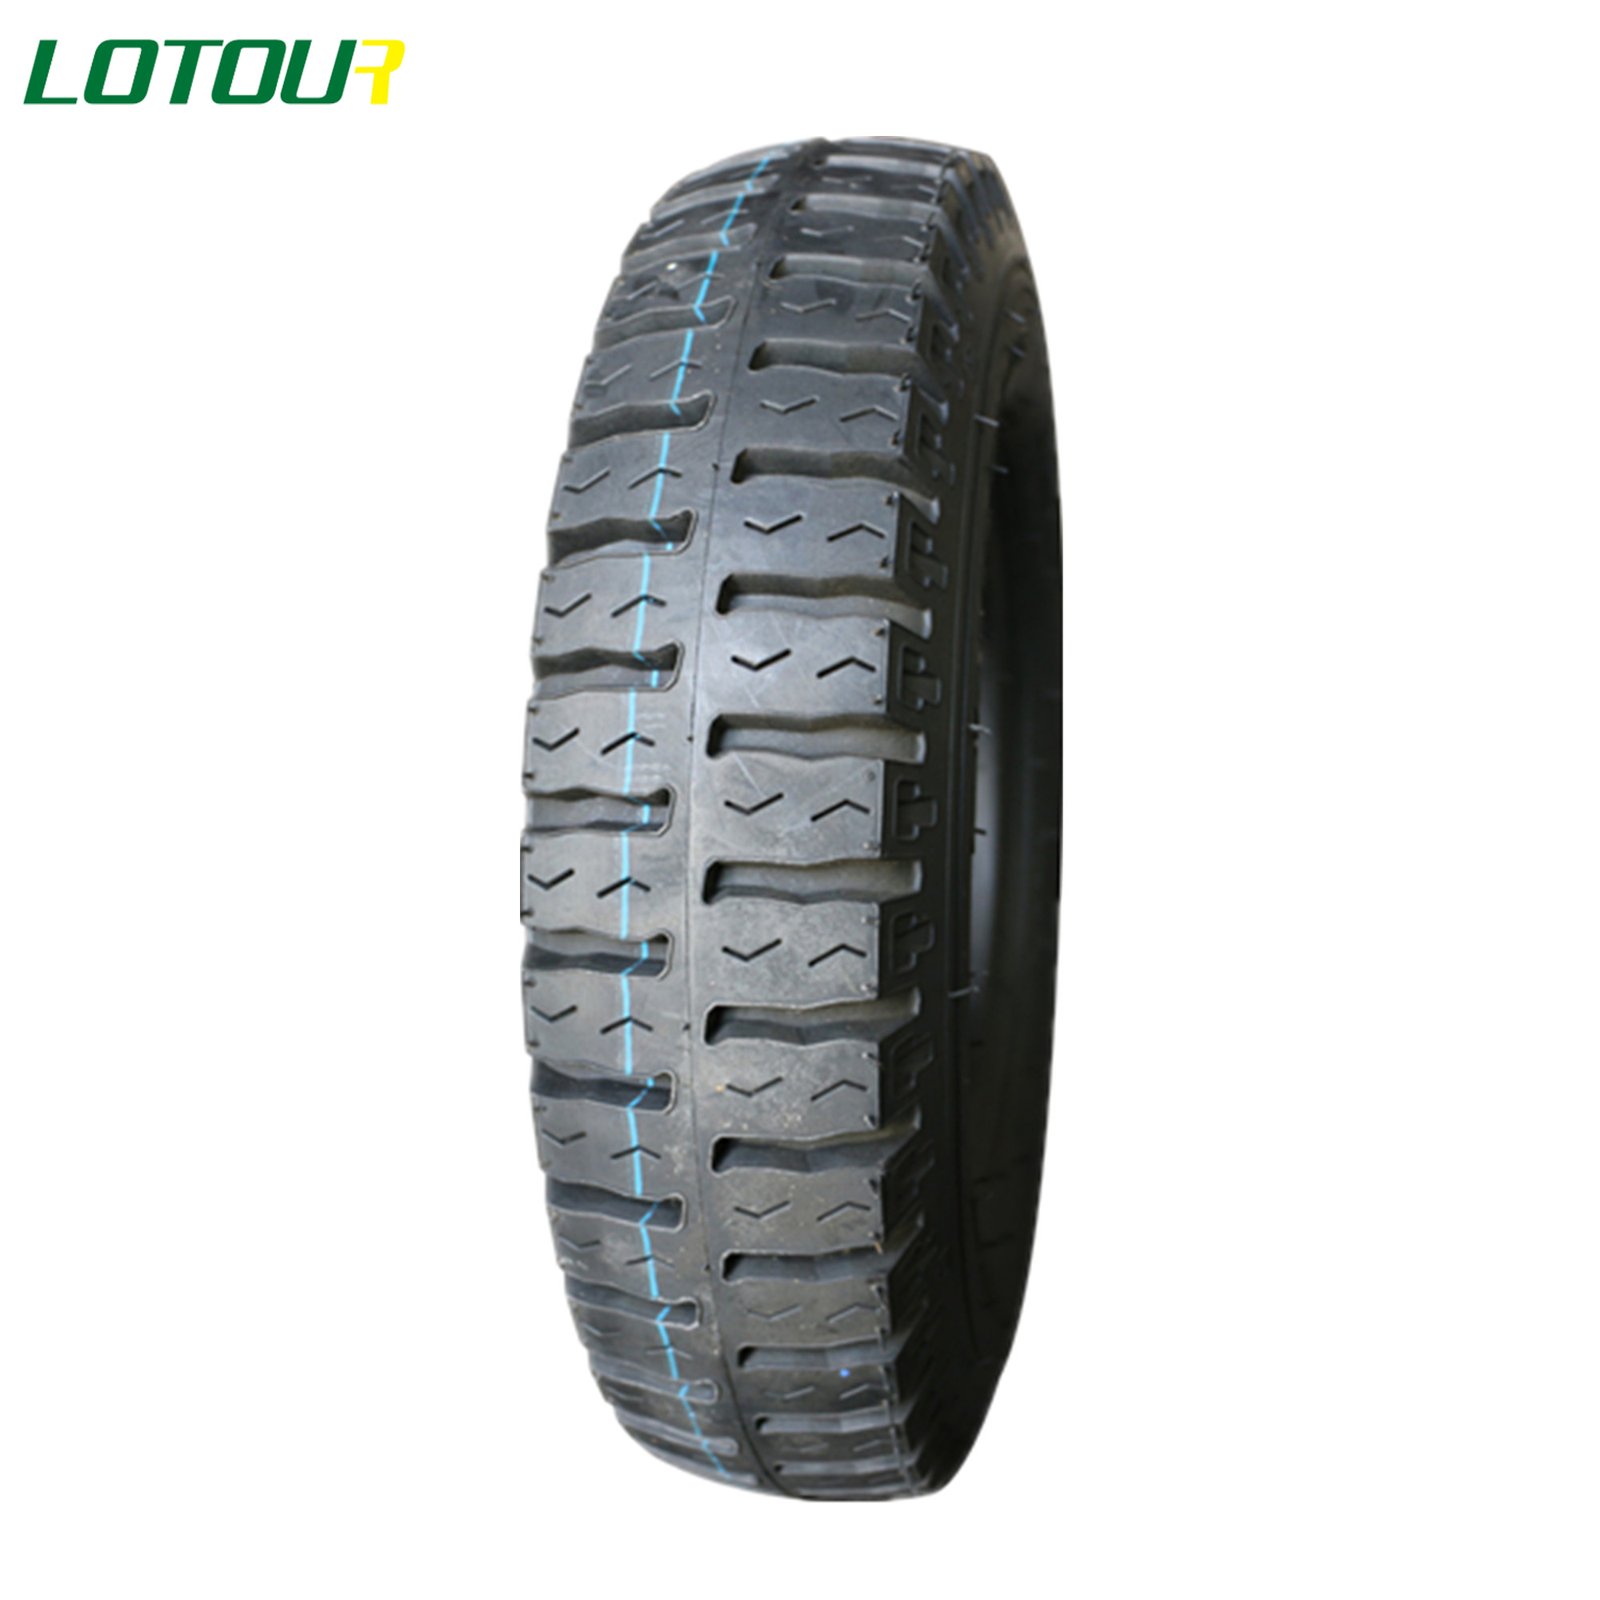 Lotour Tire M2073